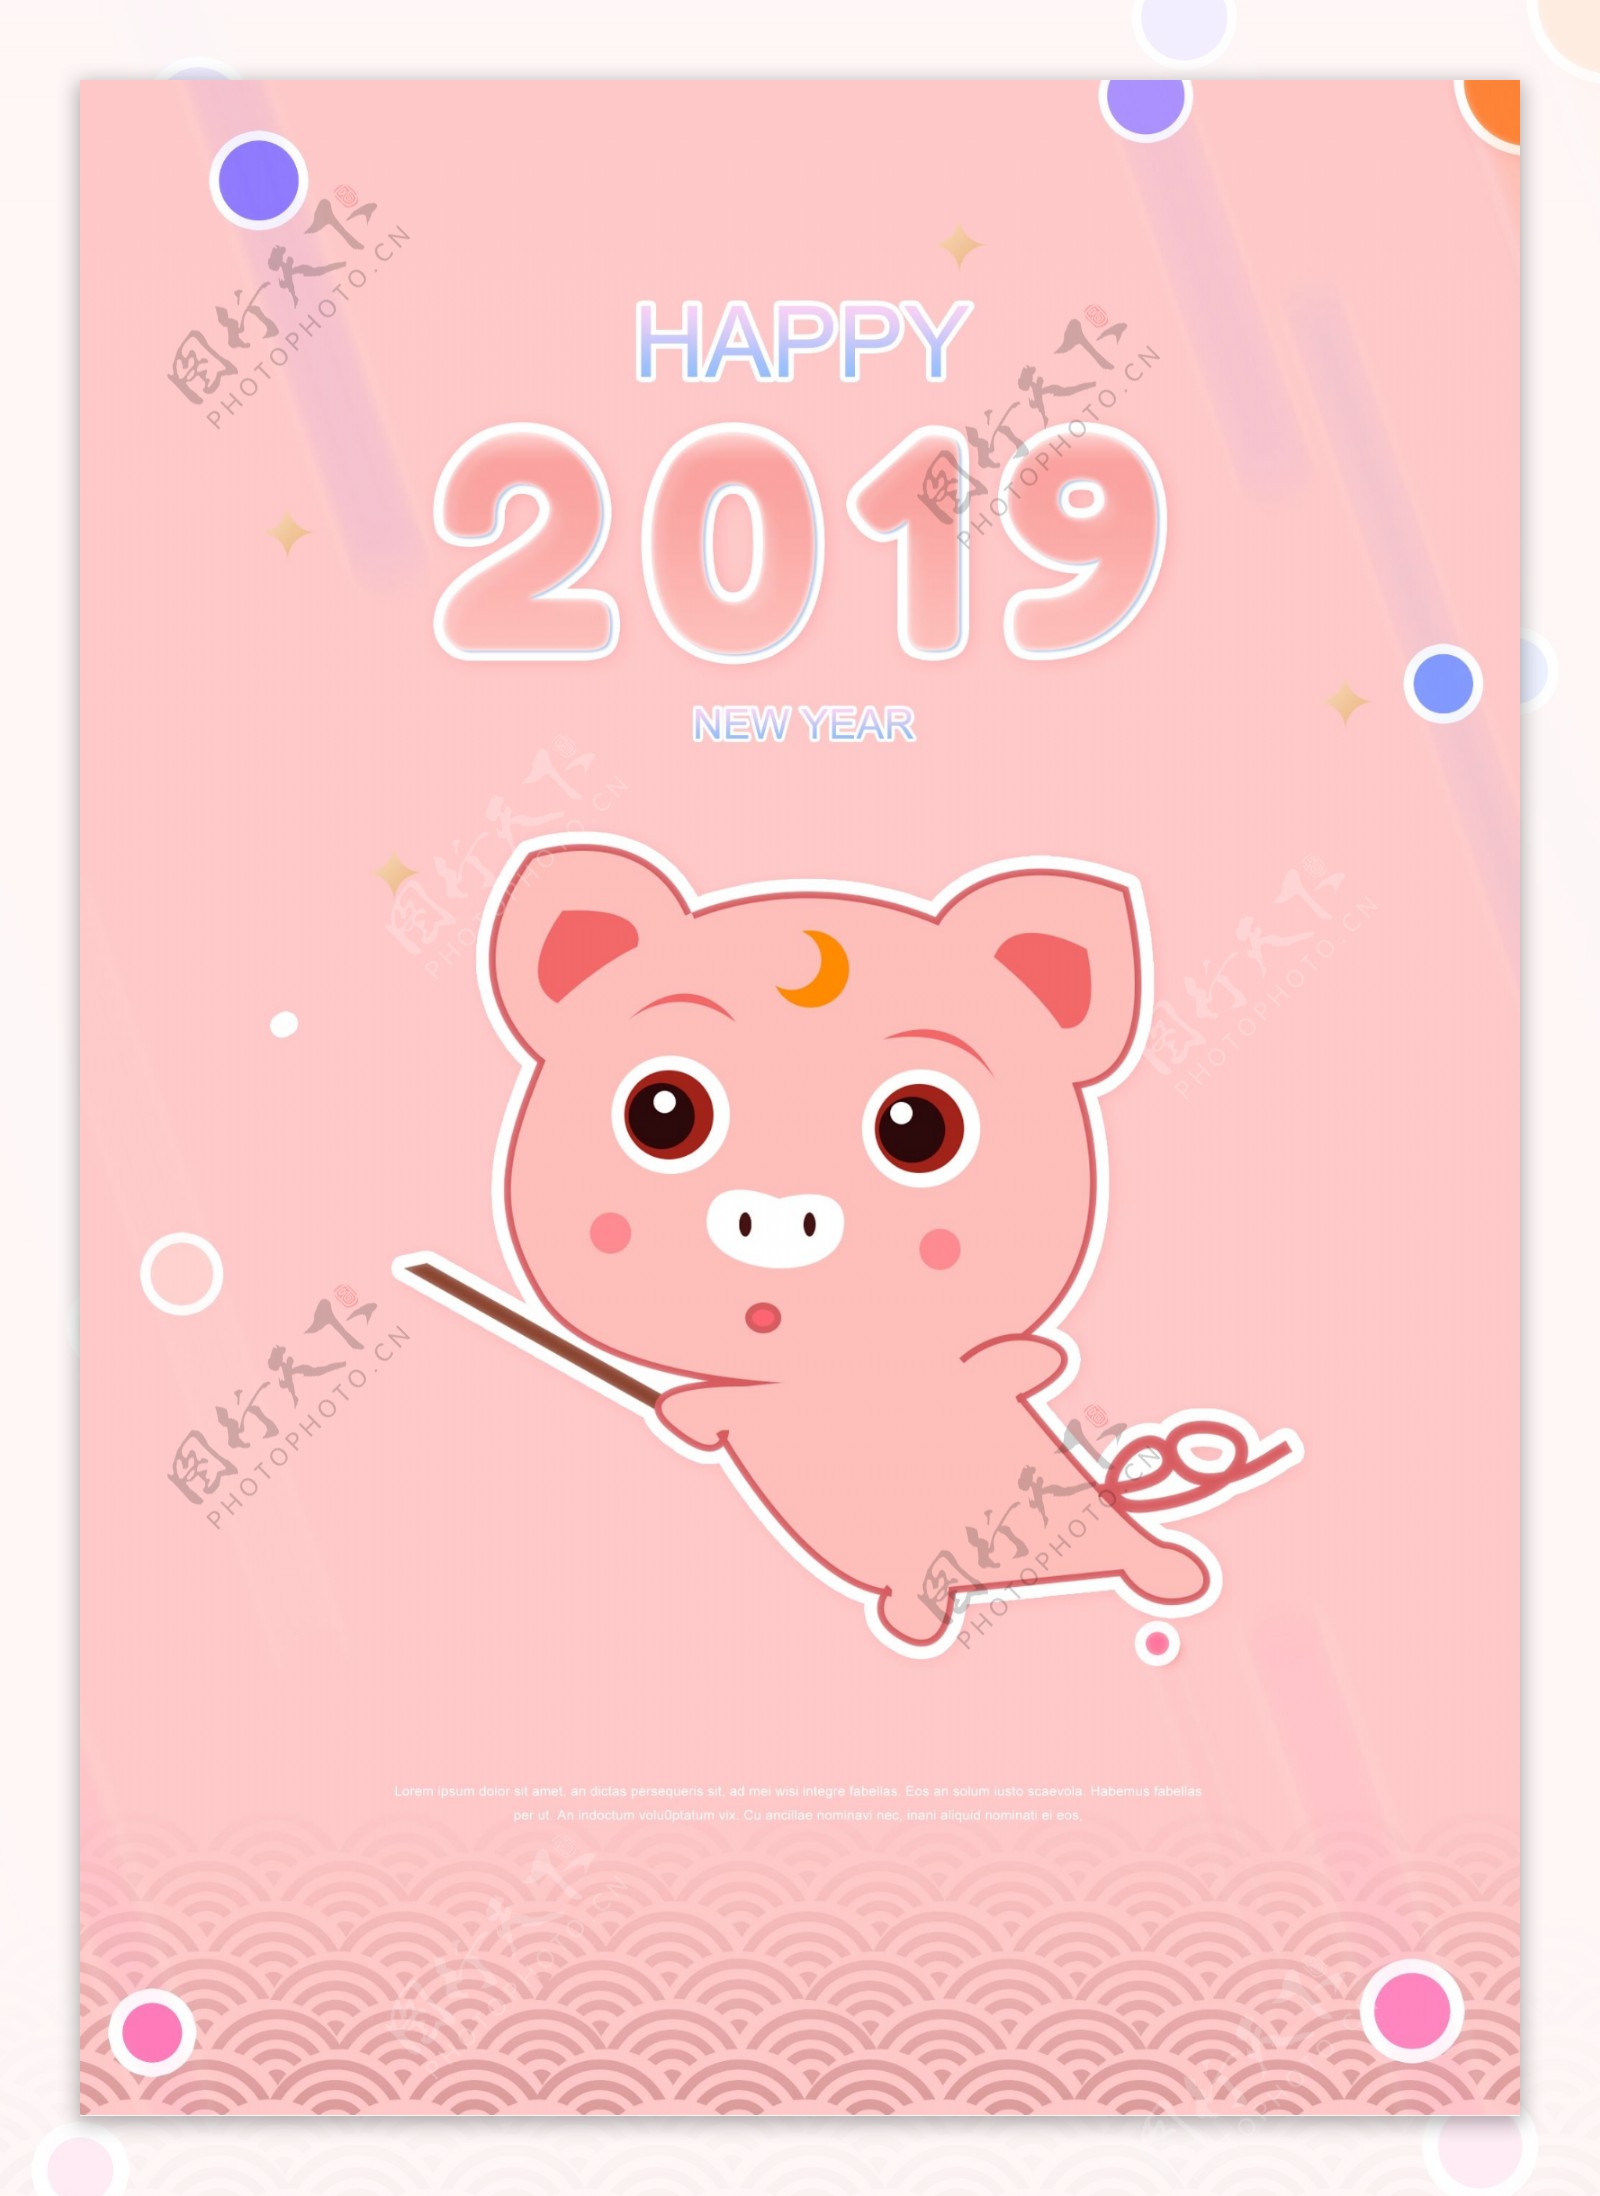 粉红色的卡通2019年金猪新的海报